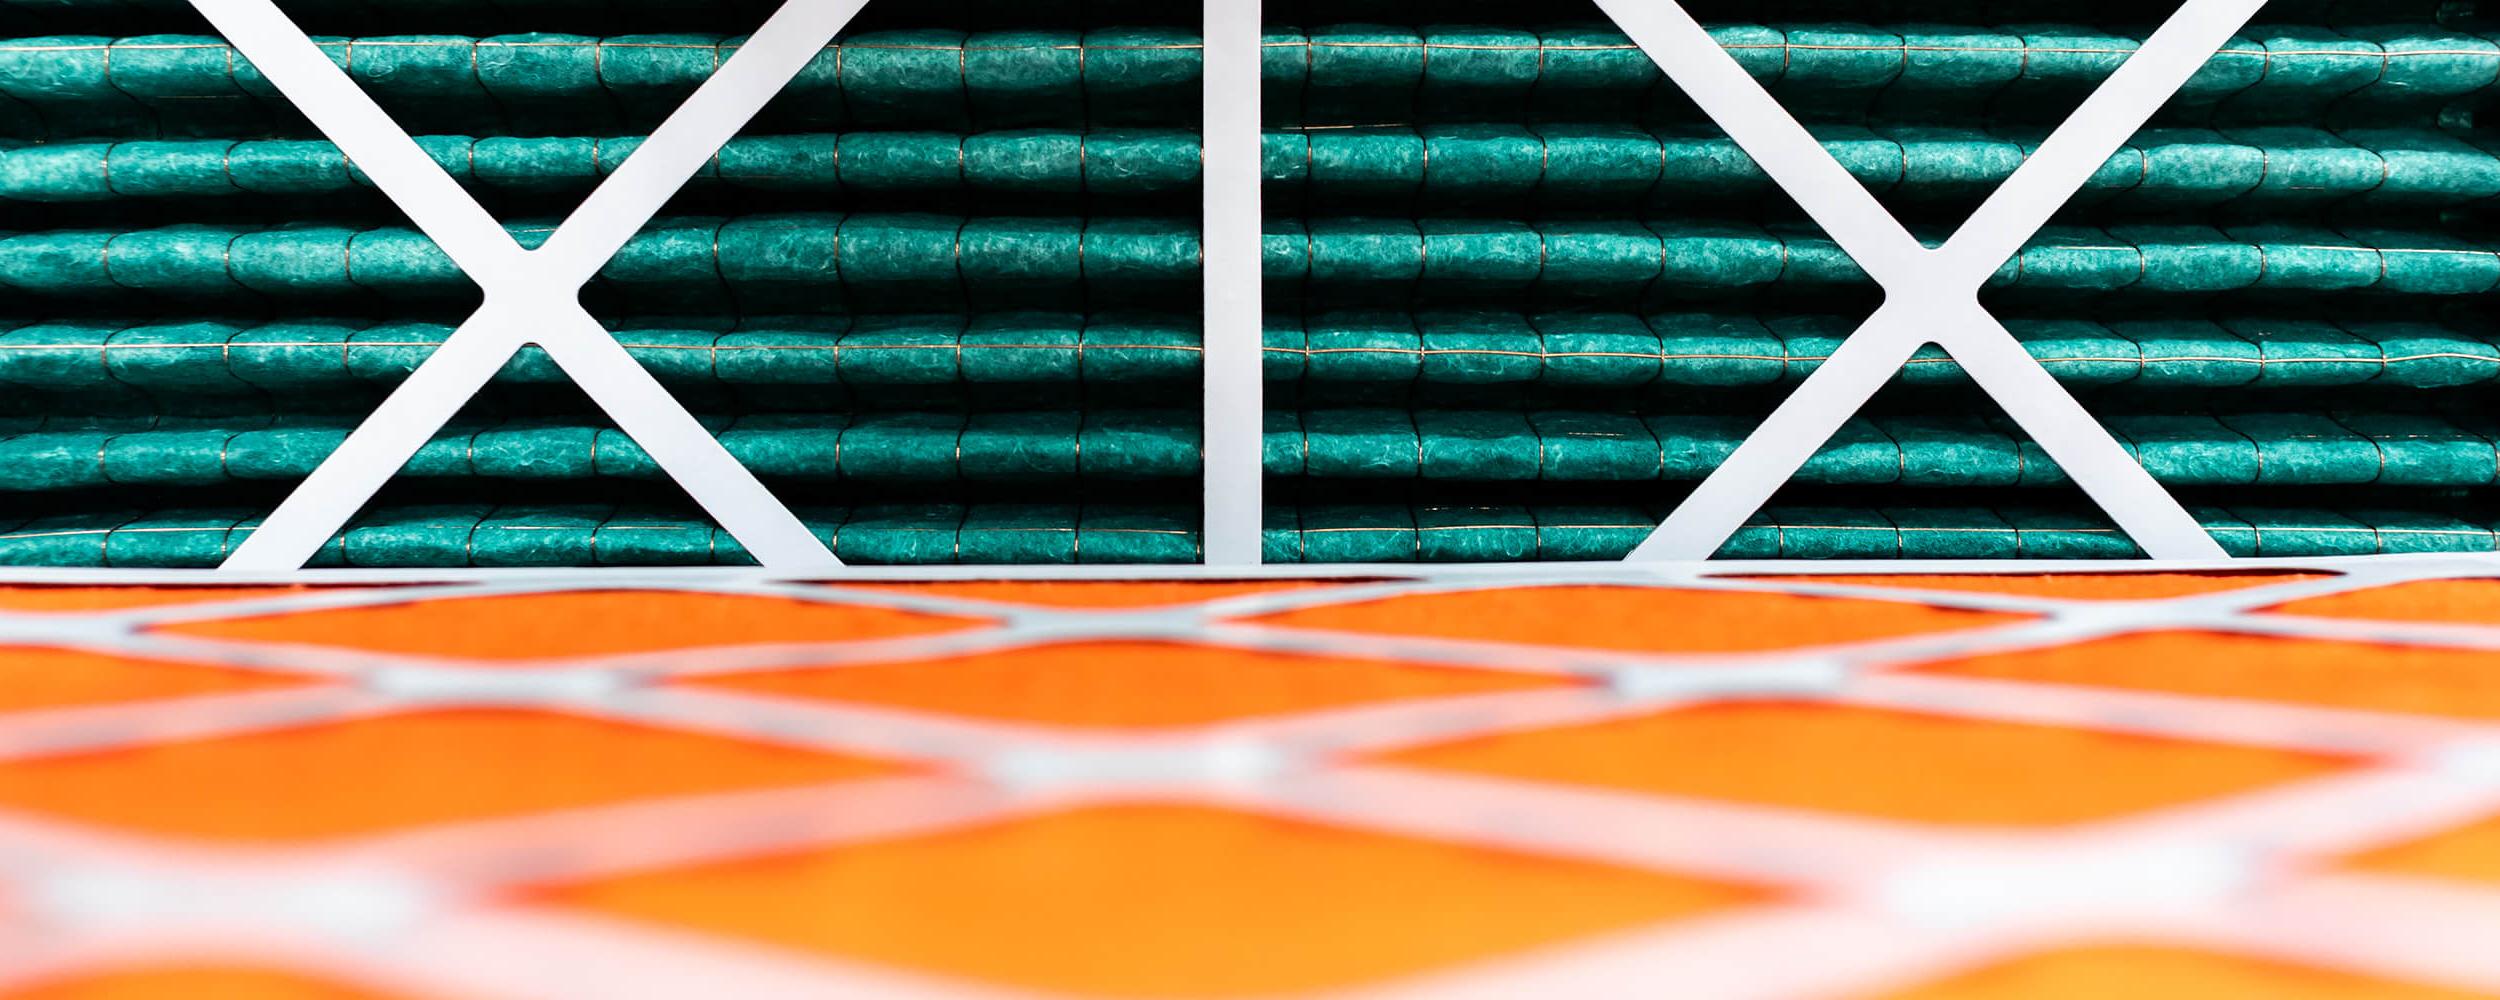 关闭-up photography of rolls of orange and green insulating material being held in place with white cross frames